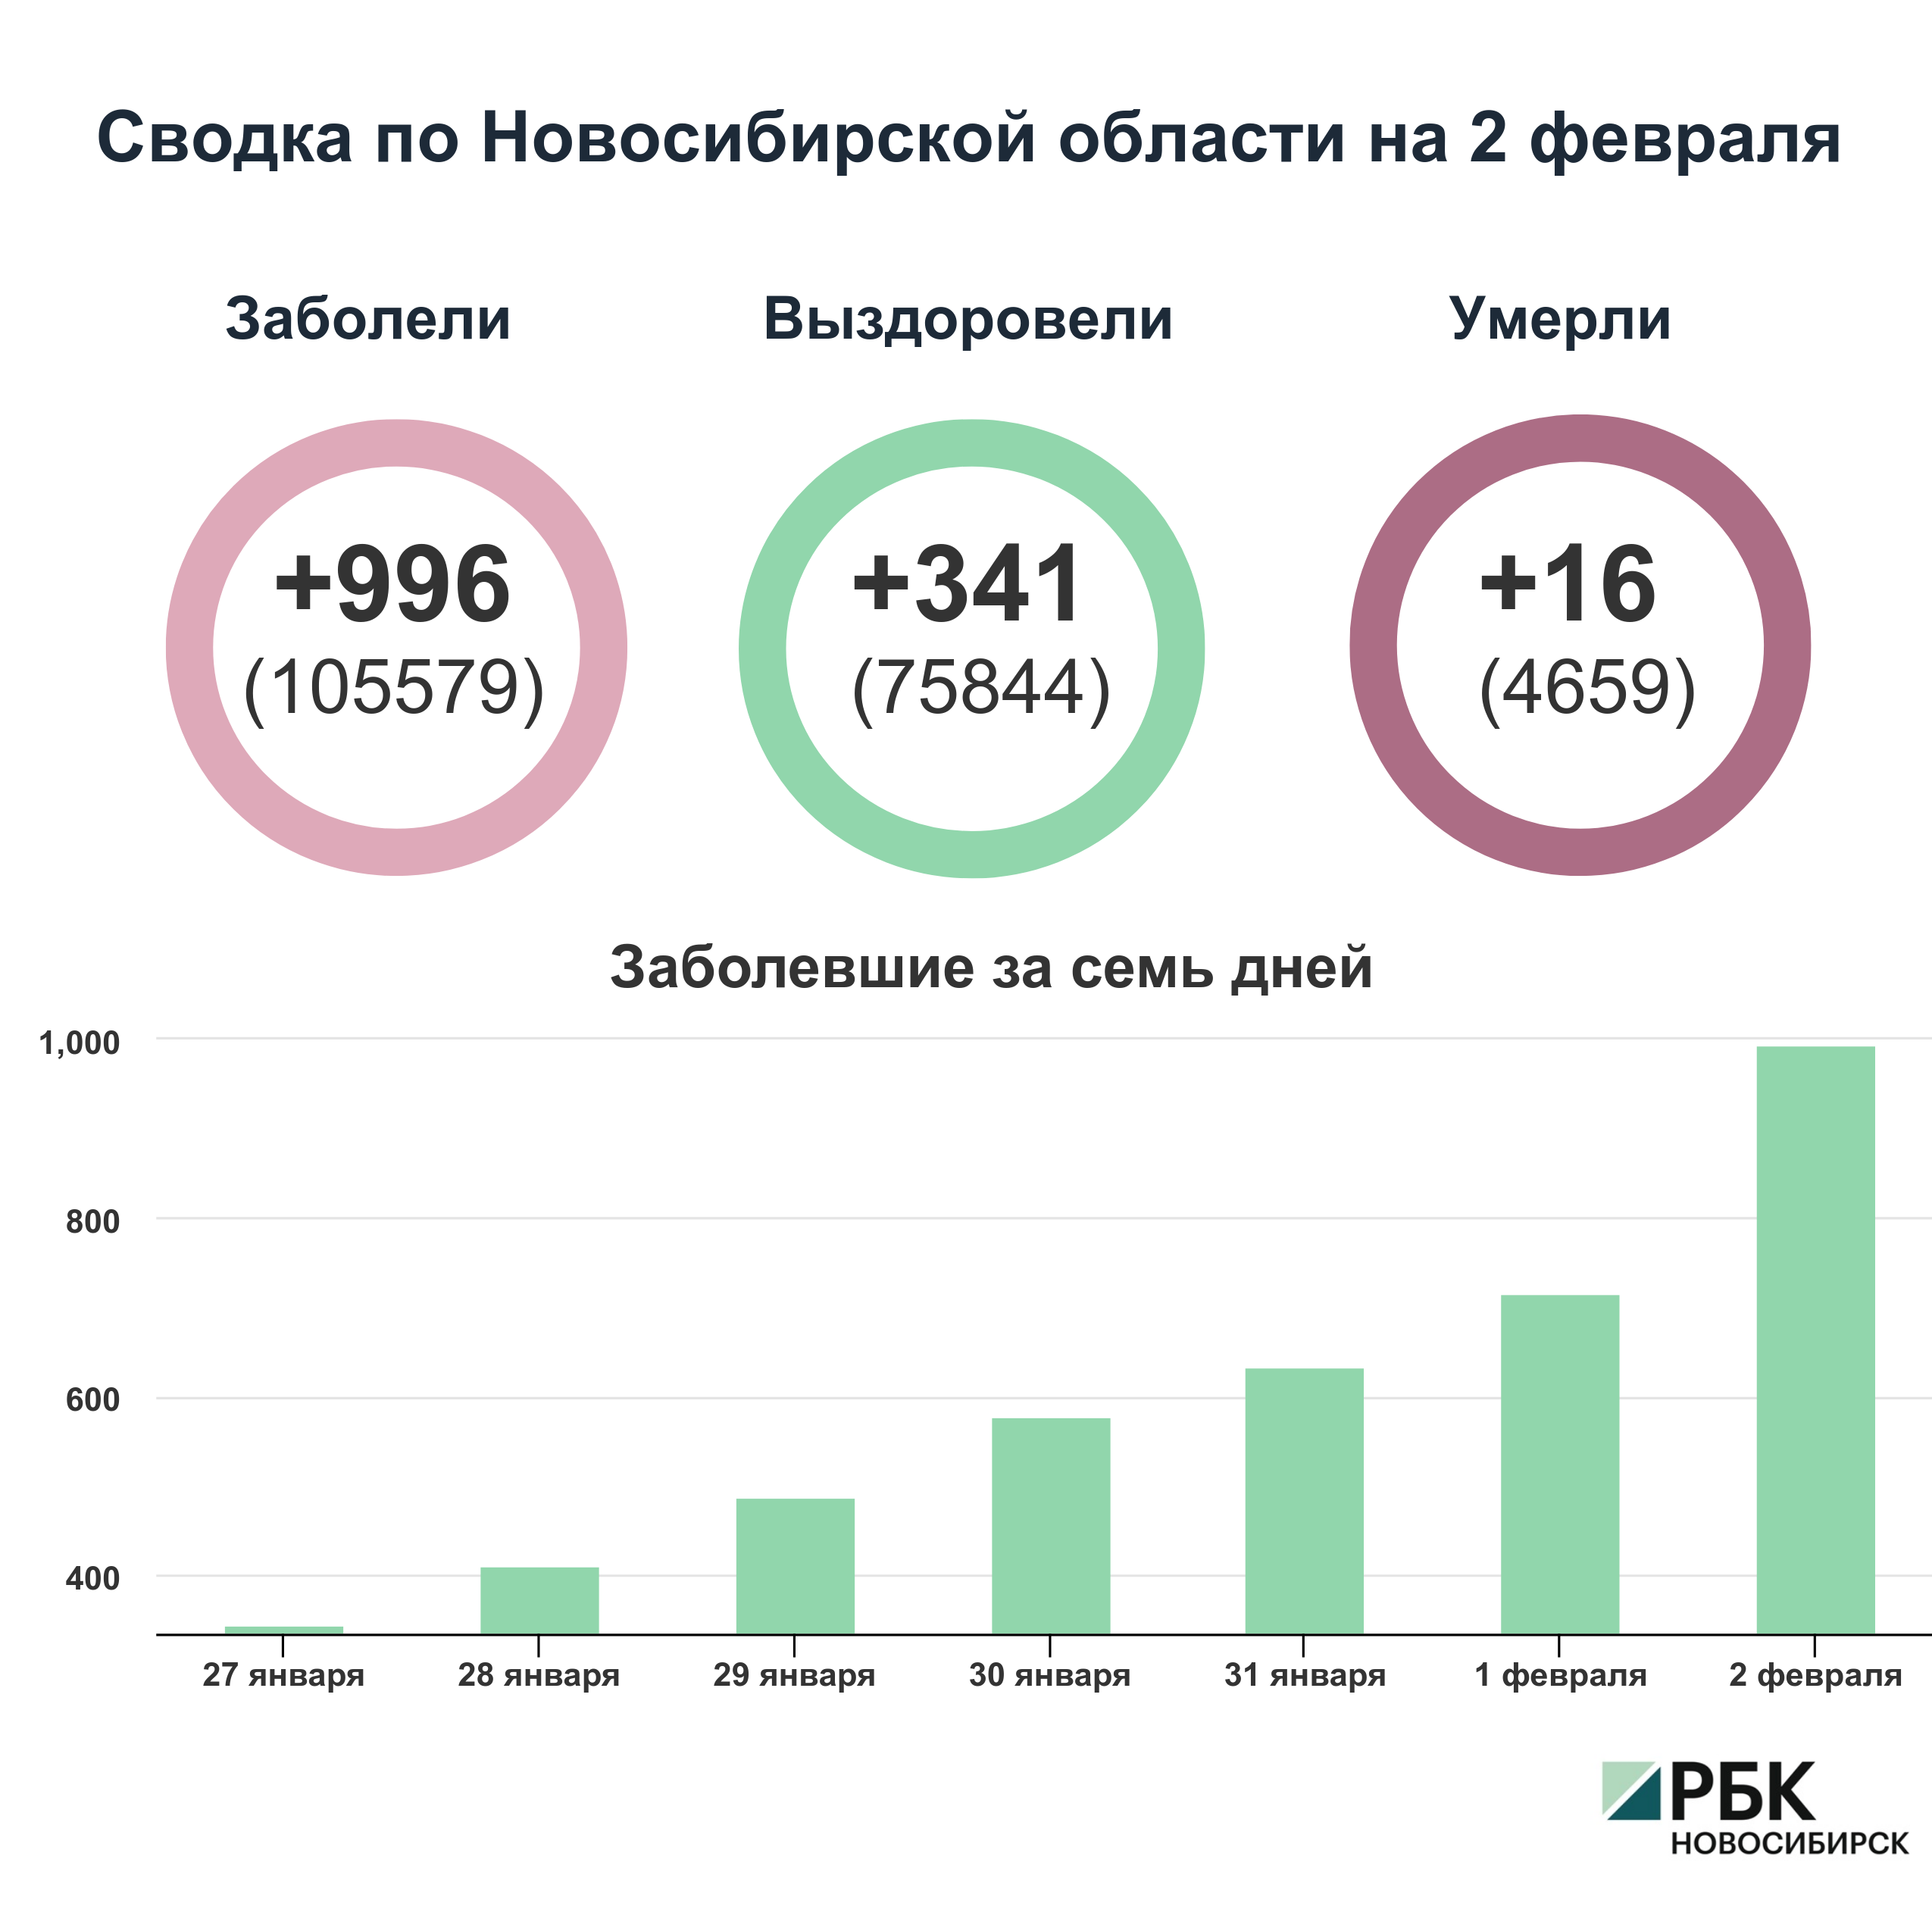 Коронавирус в Новосибирске: сводка на 2 февраля